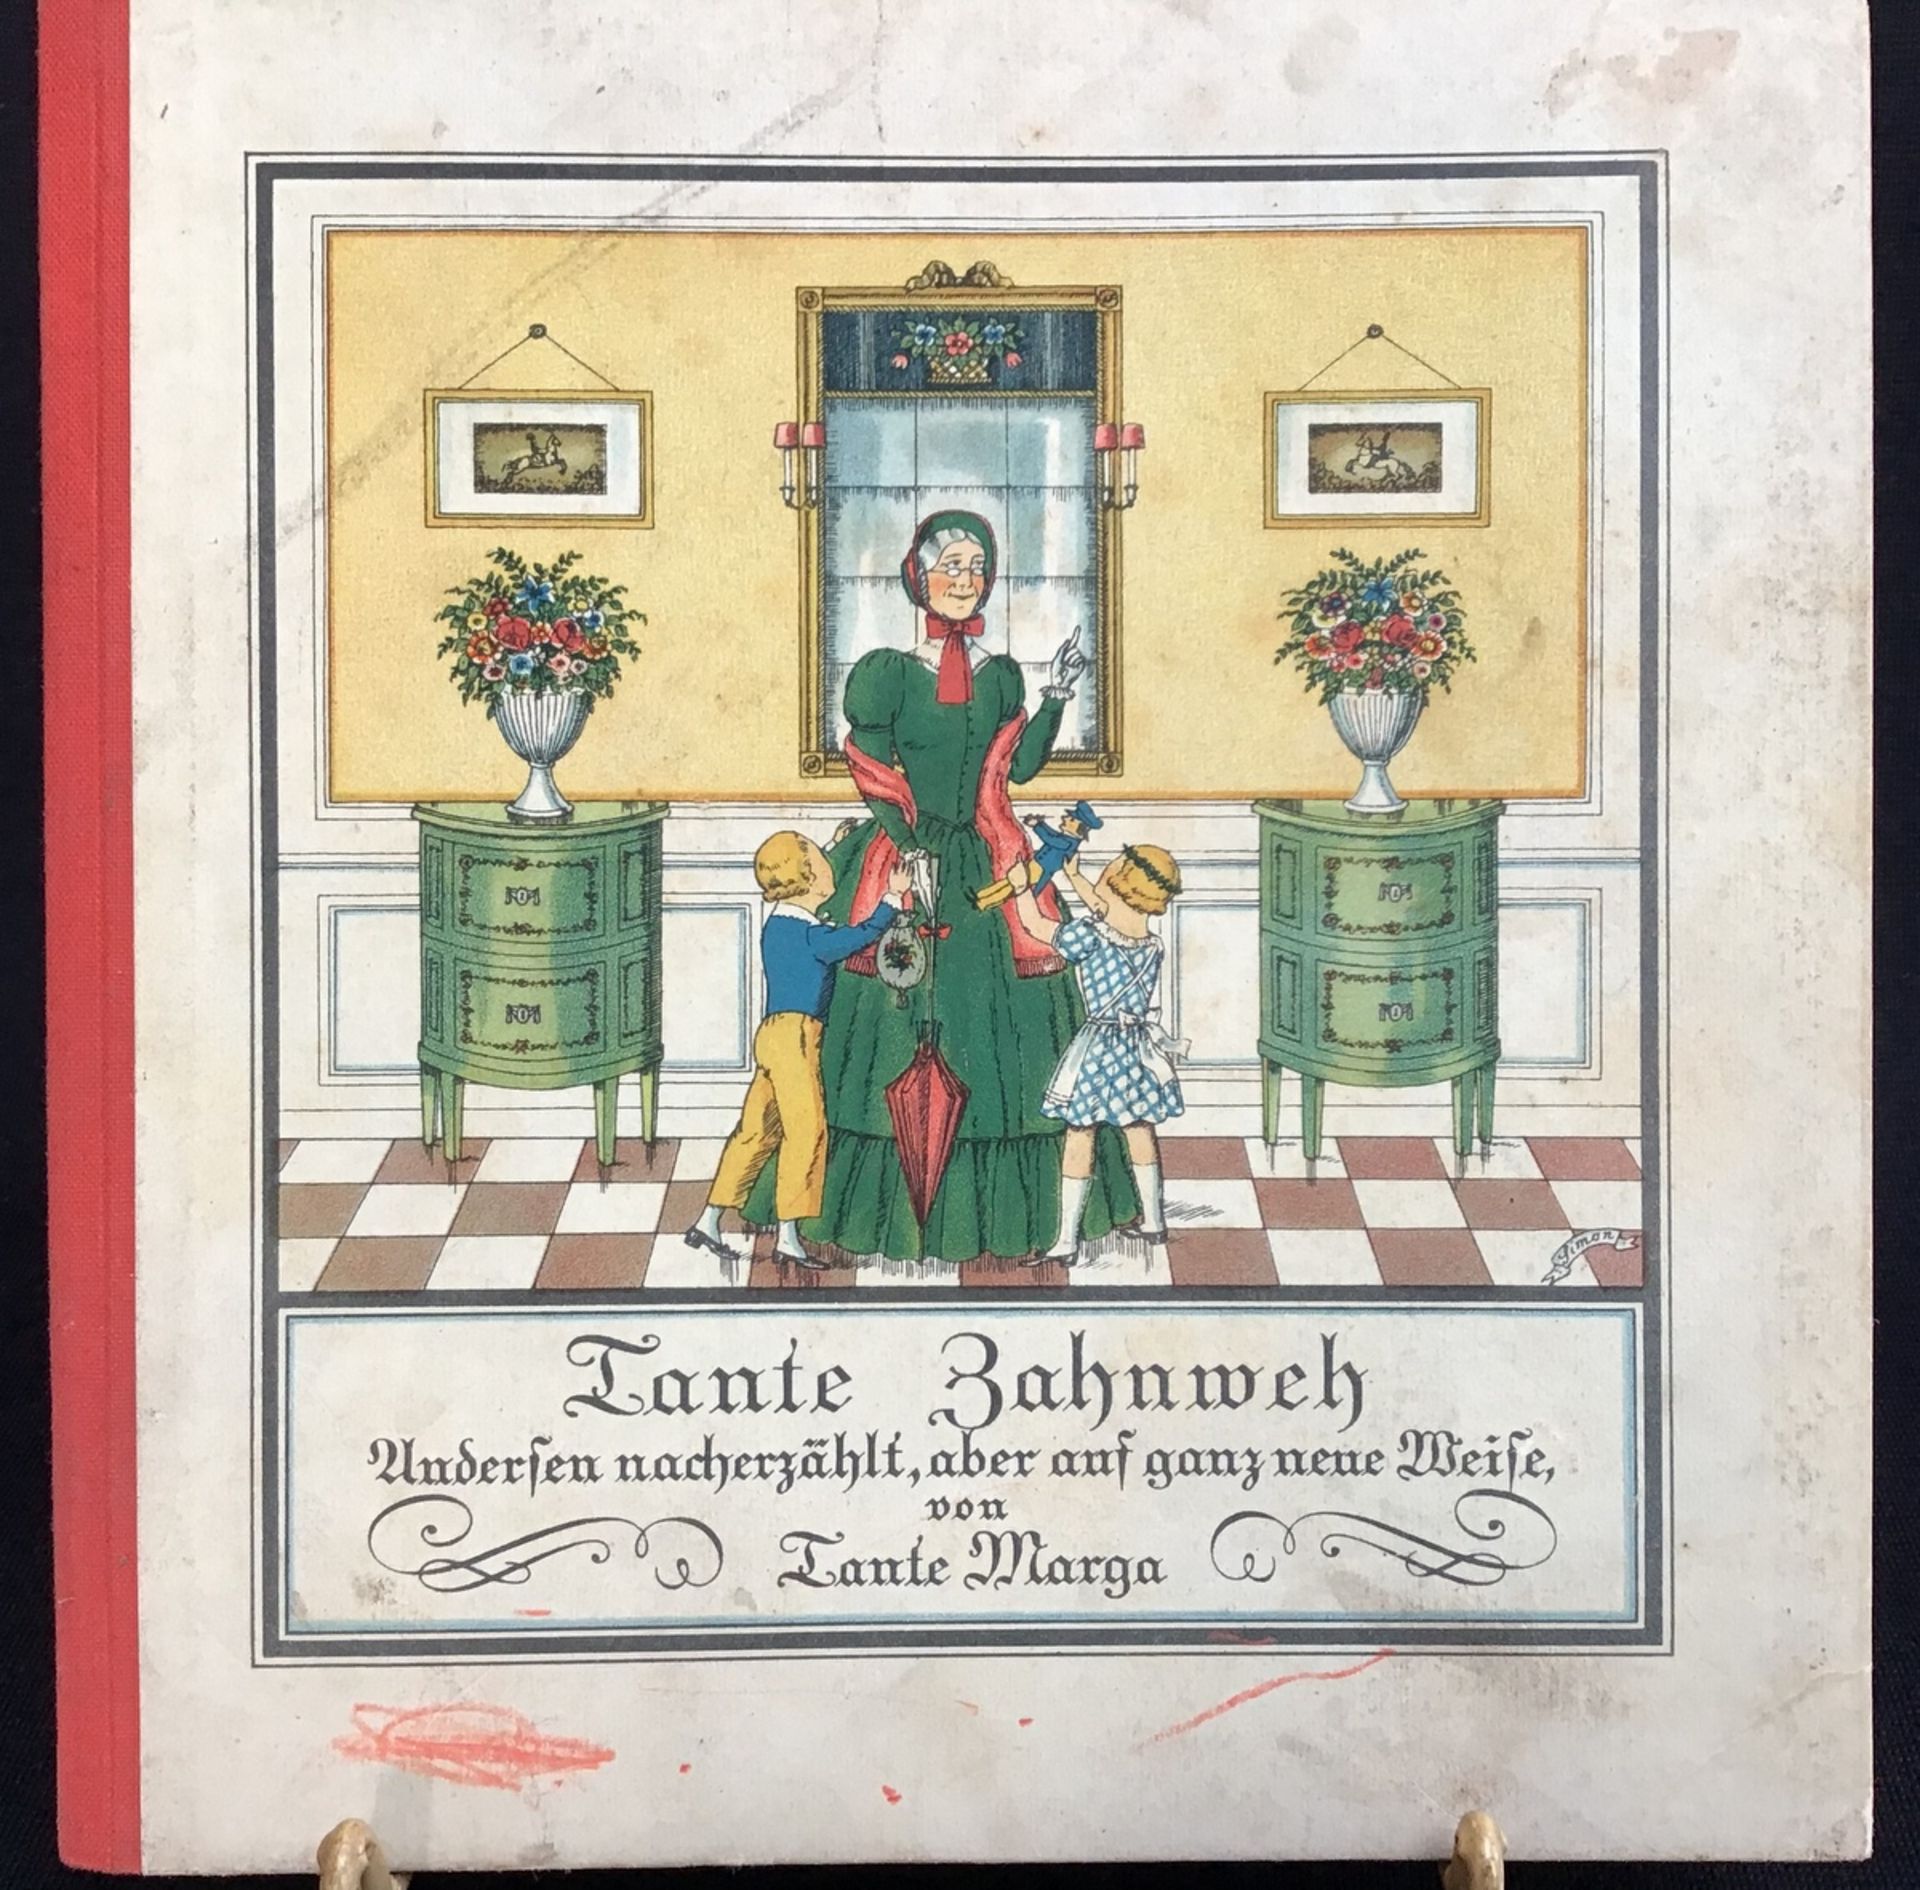 "Tante Zahnweh", um 1920, Andersen nacherzählt ...von Tante Marga, Bilder M. Simon, Verlag